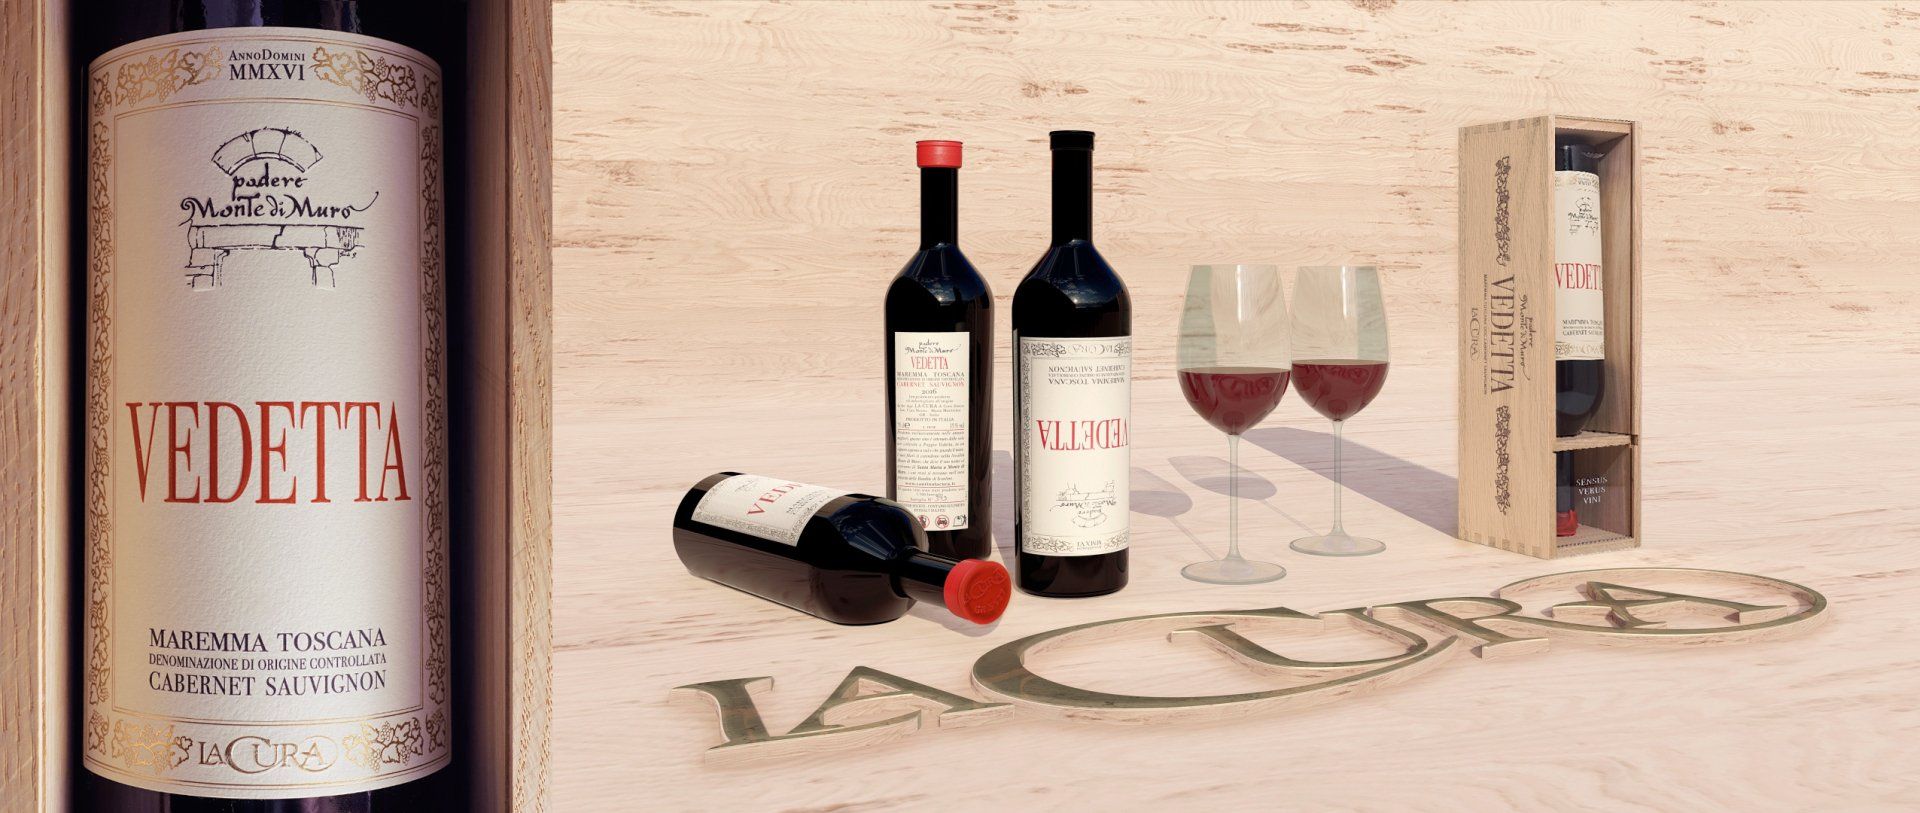 Vedetta Wein - professionelle Produktpräsentation durch professionelle Produktfotografie & 3D-Grafik, made by größer F